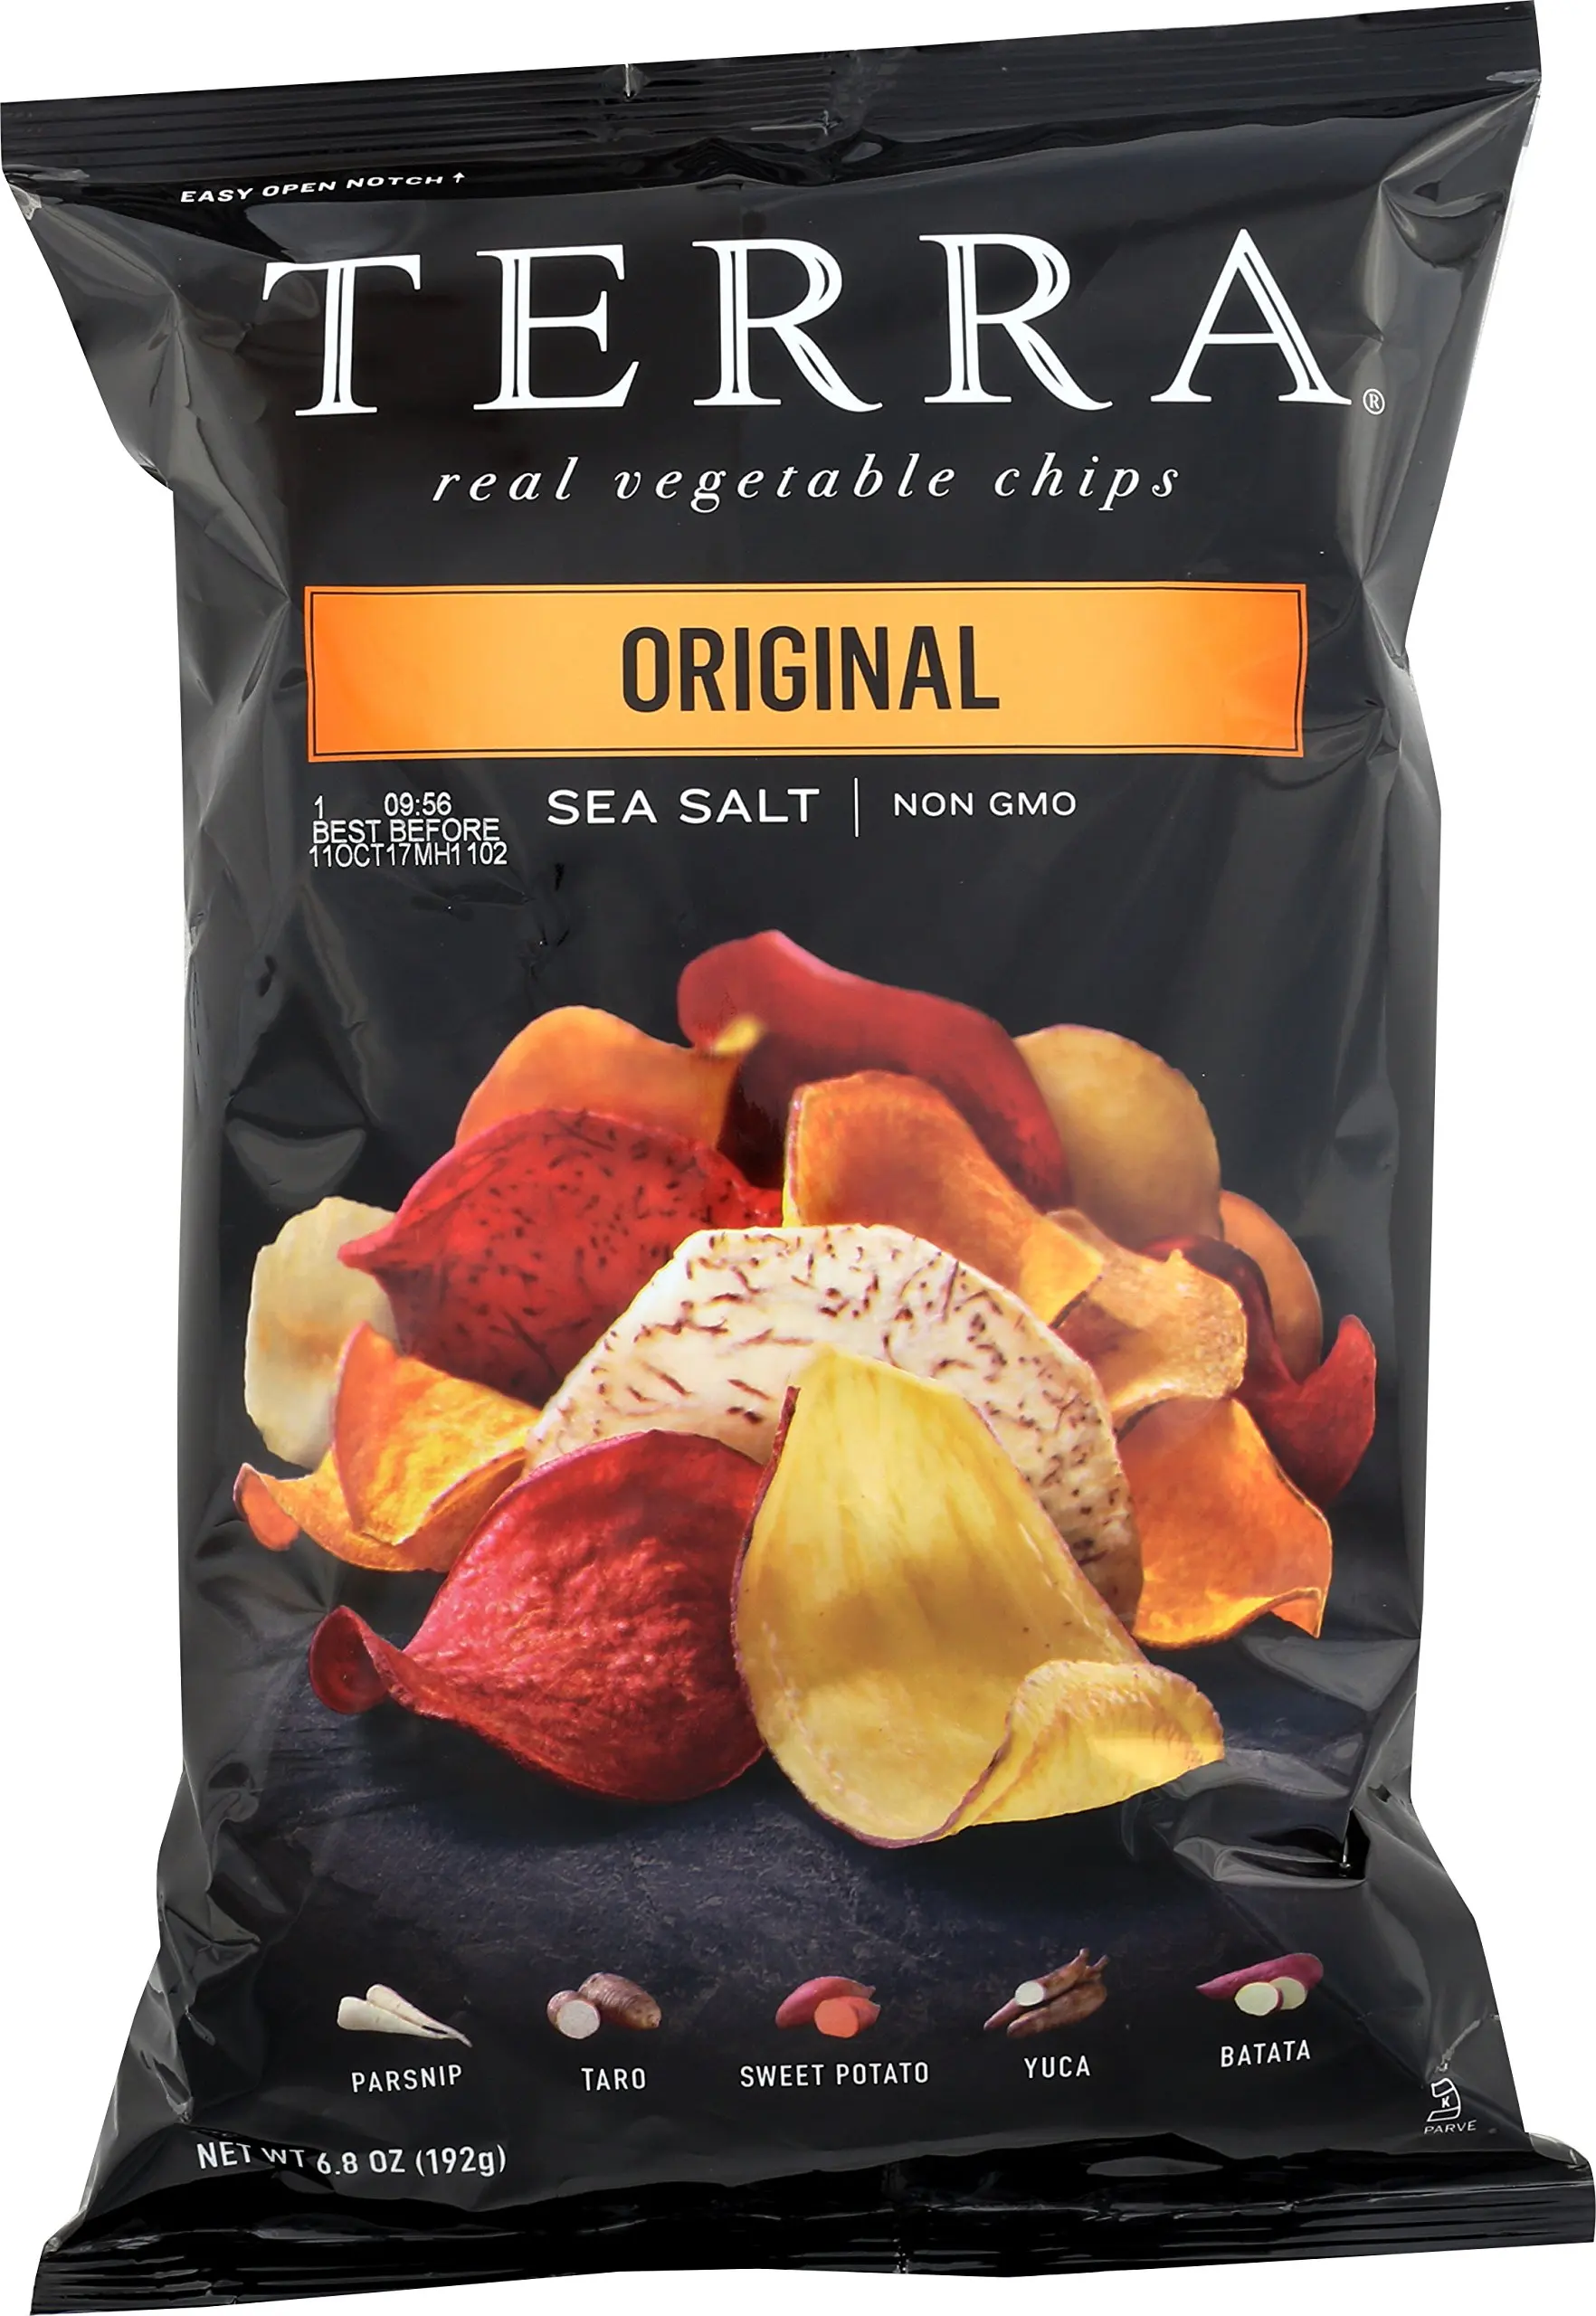 Vegetable chips. Terra Chips. Terra Vegetable Chips. Экзотические чипсы. Чипсы Экзотик.